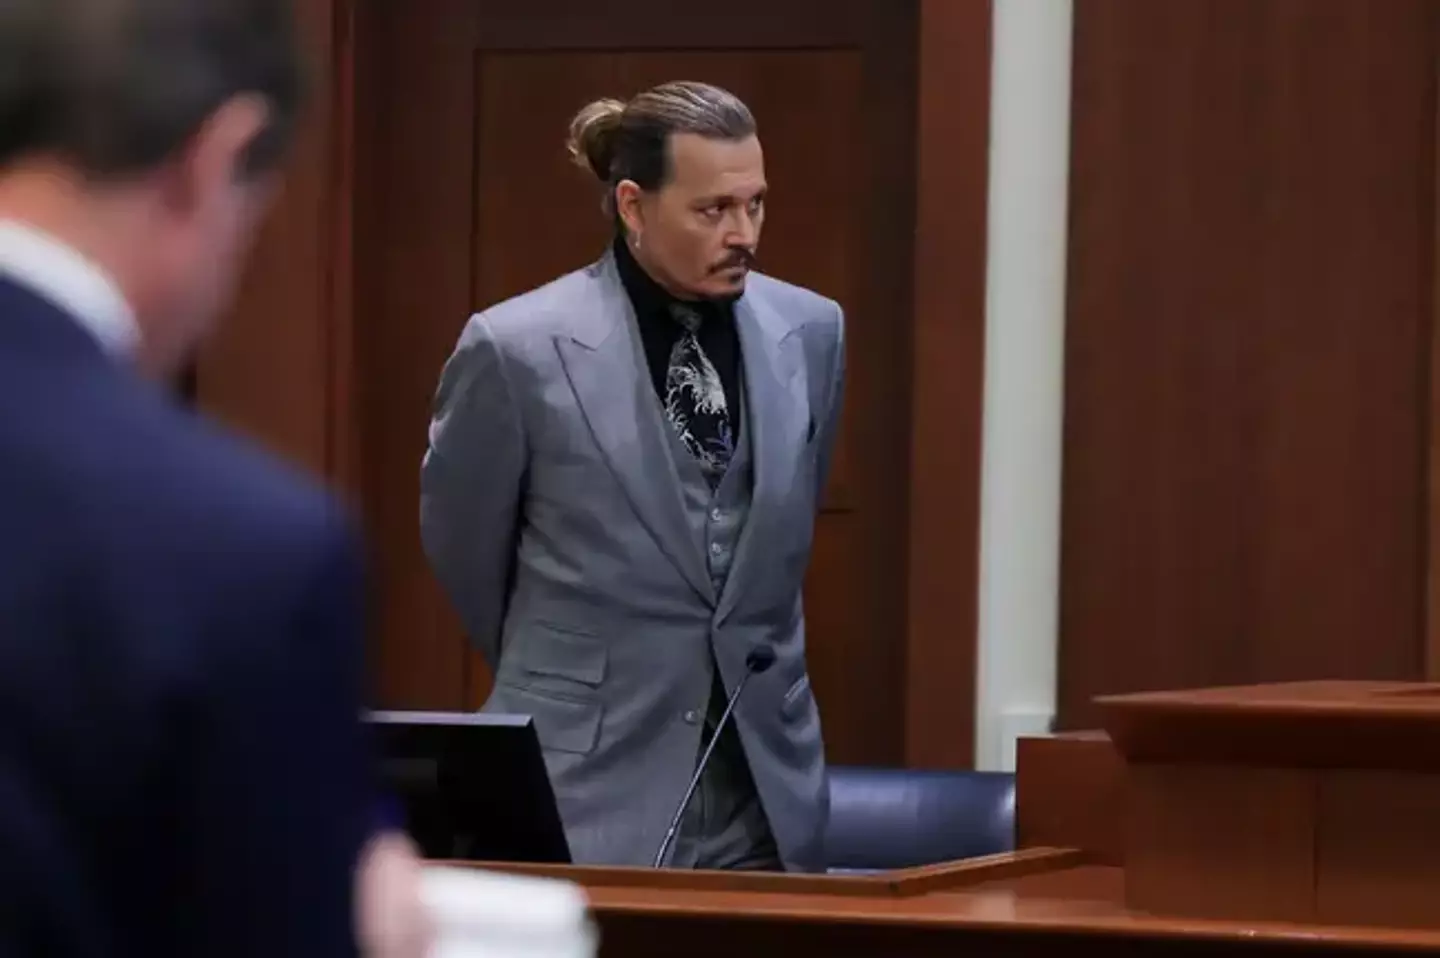 Johnny Depp sued Amber Heard for defaming him.